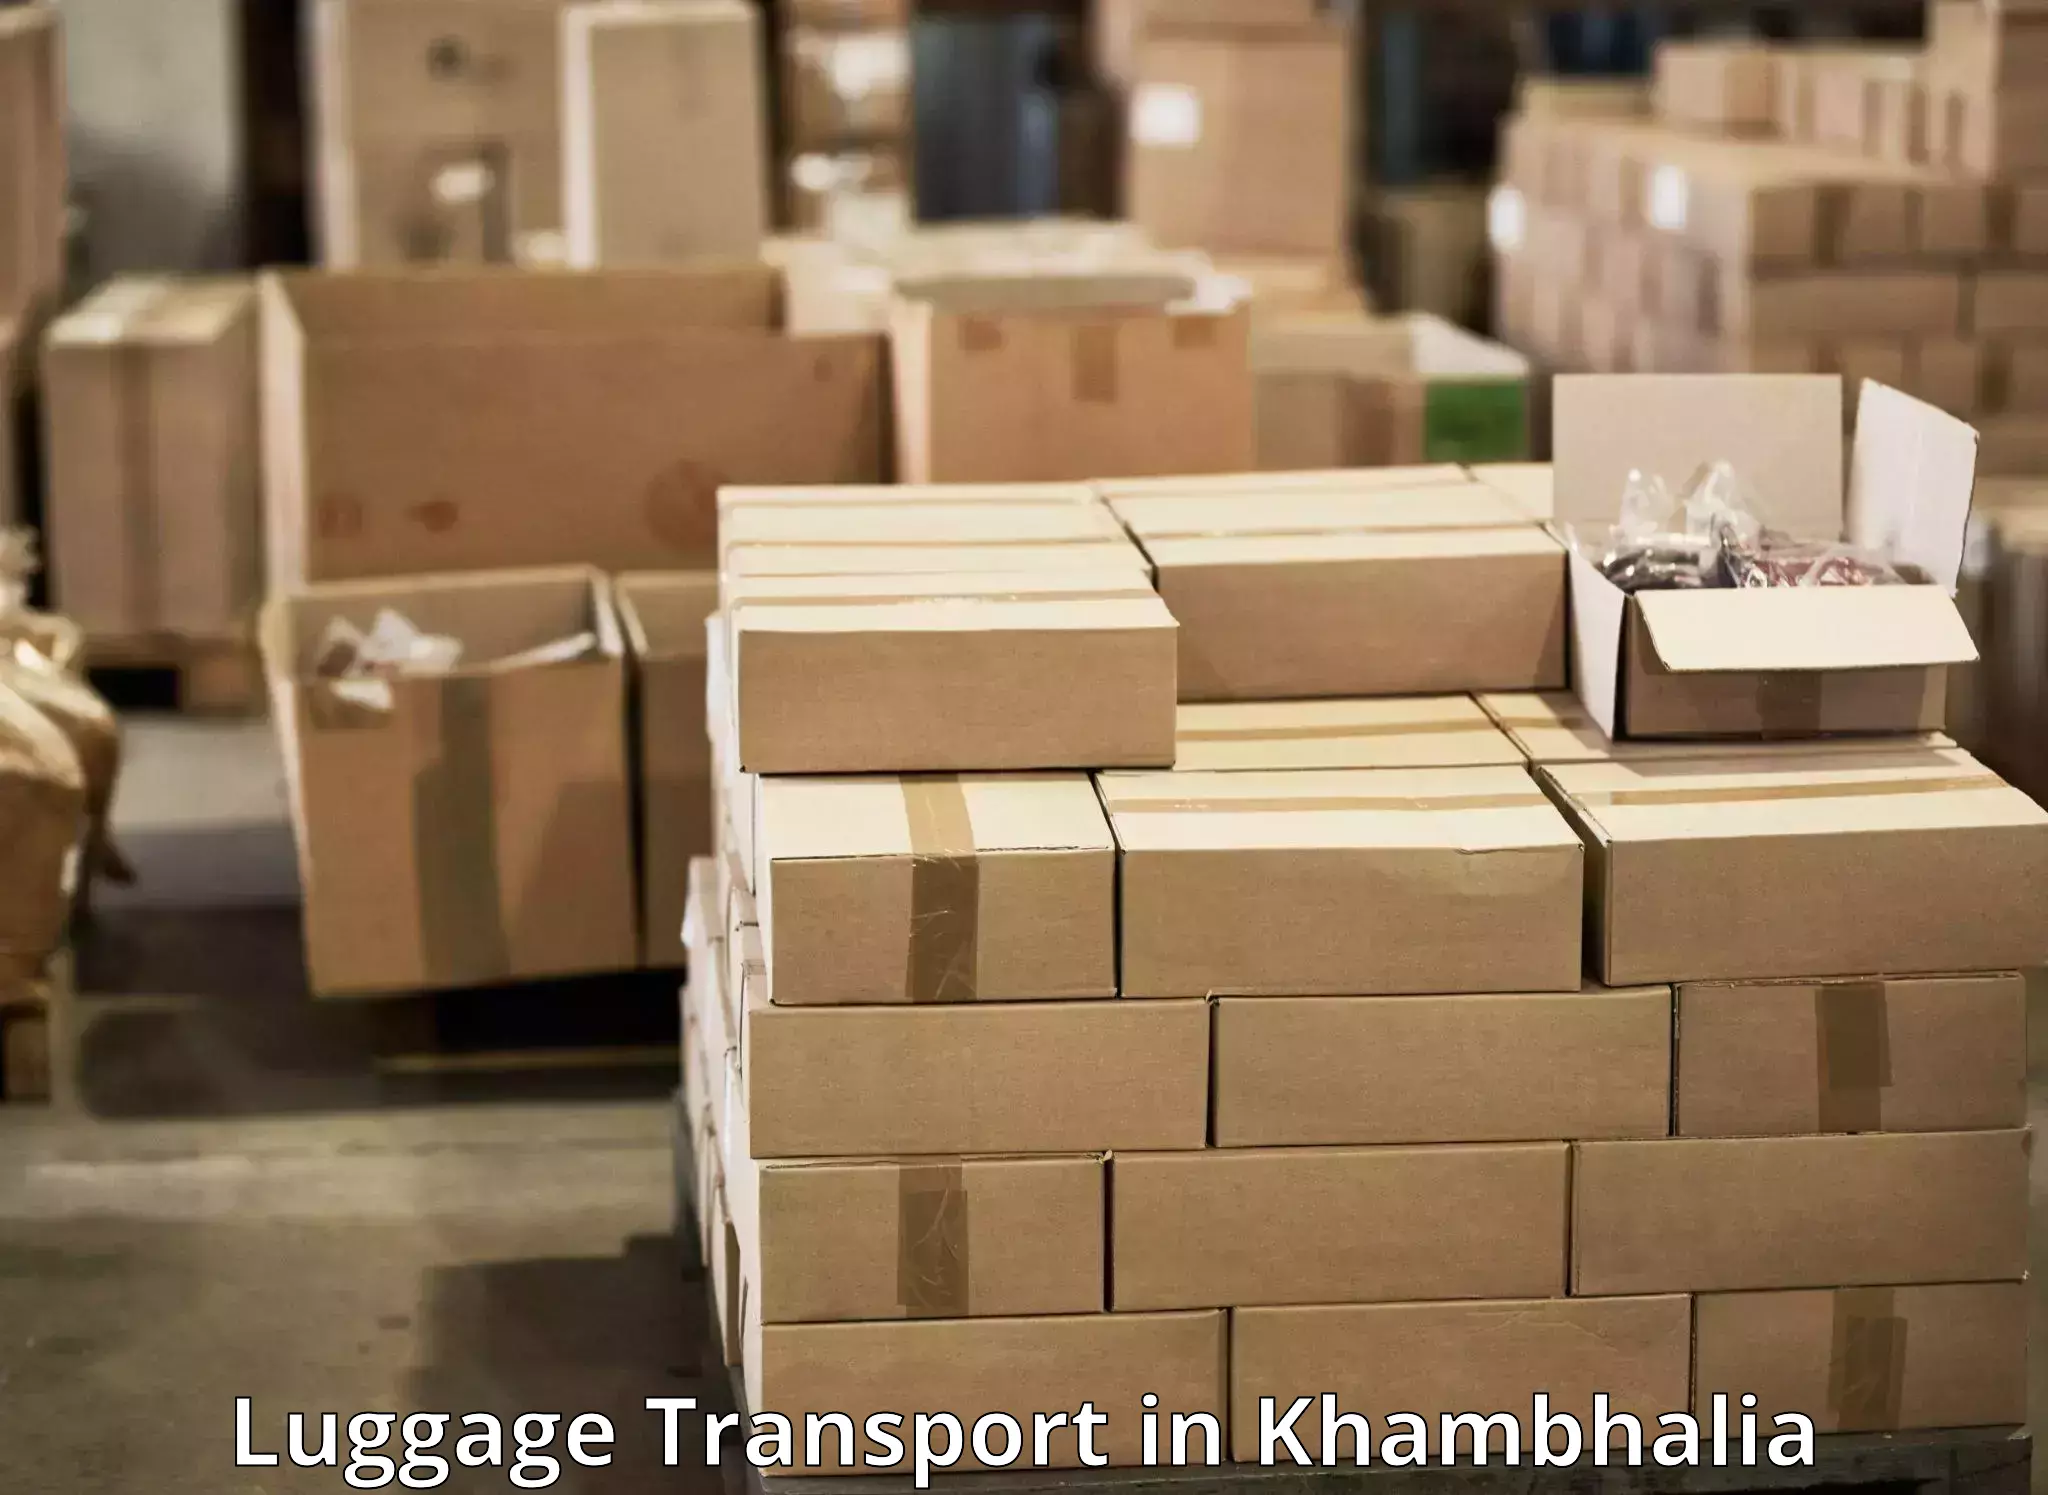 Luggage shipping options in Khambhalia